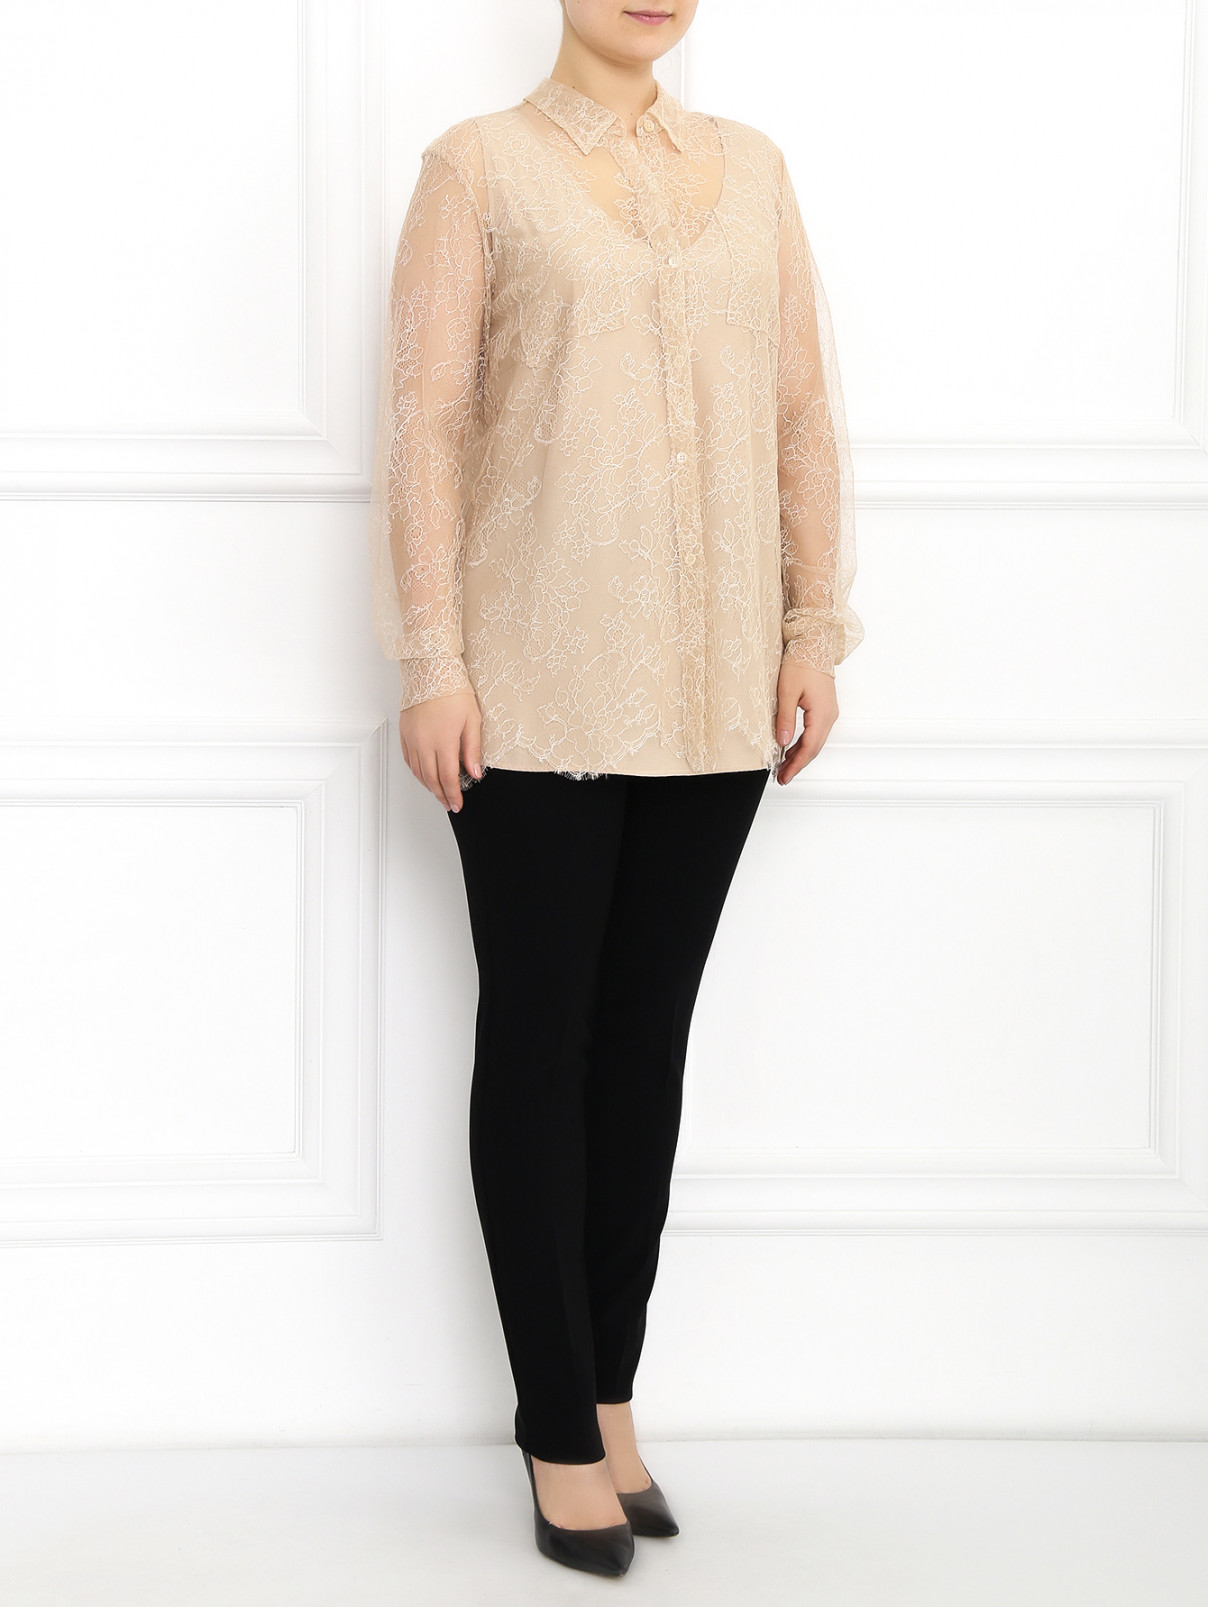 Кружевная блуза Marina Rinaldi  –  Модель Общий вид  – Цвет:  Бежевый